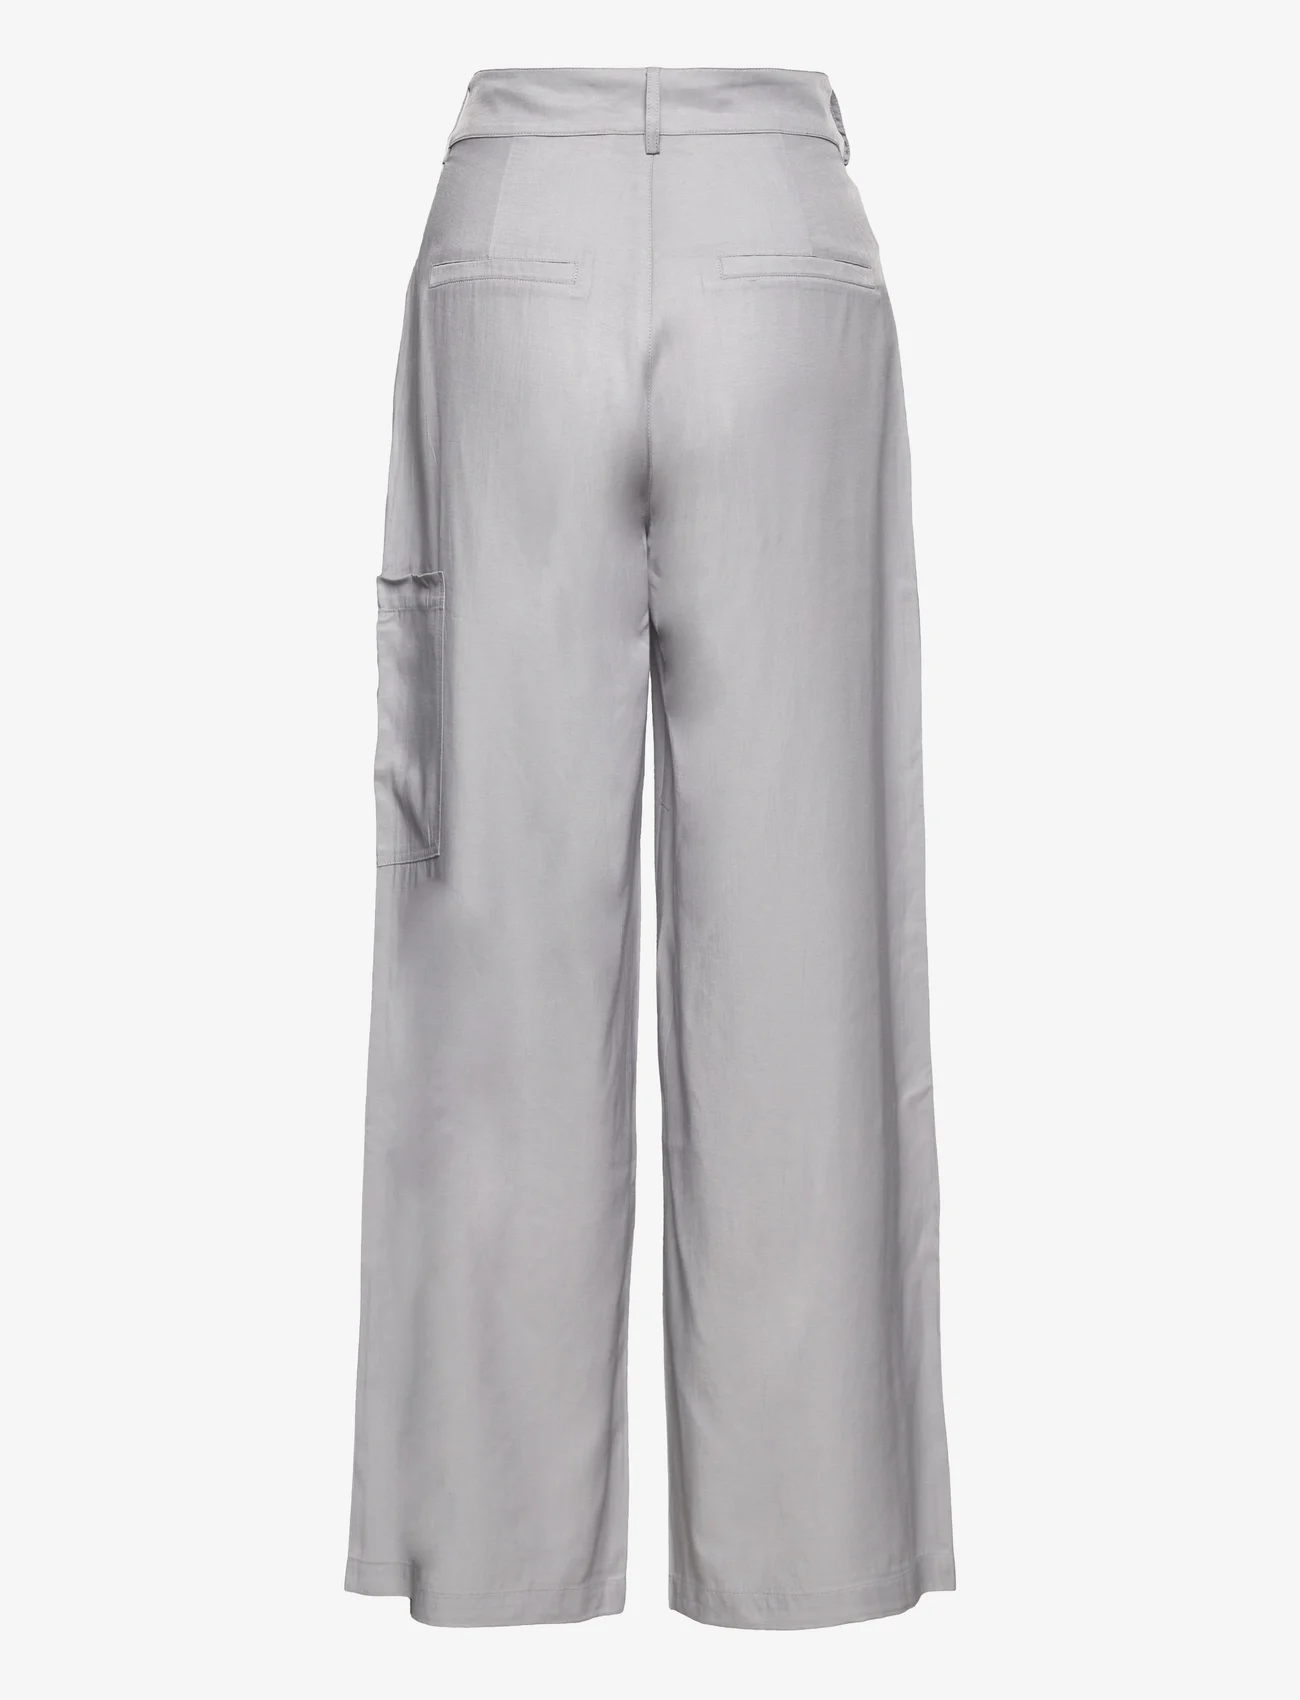 A-View - Leona pants - cargobroeken - light grey - 1